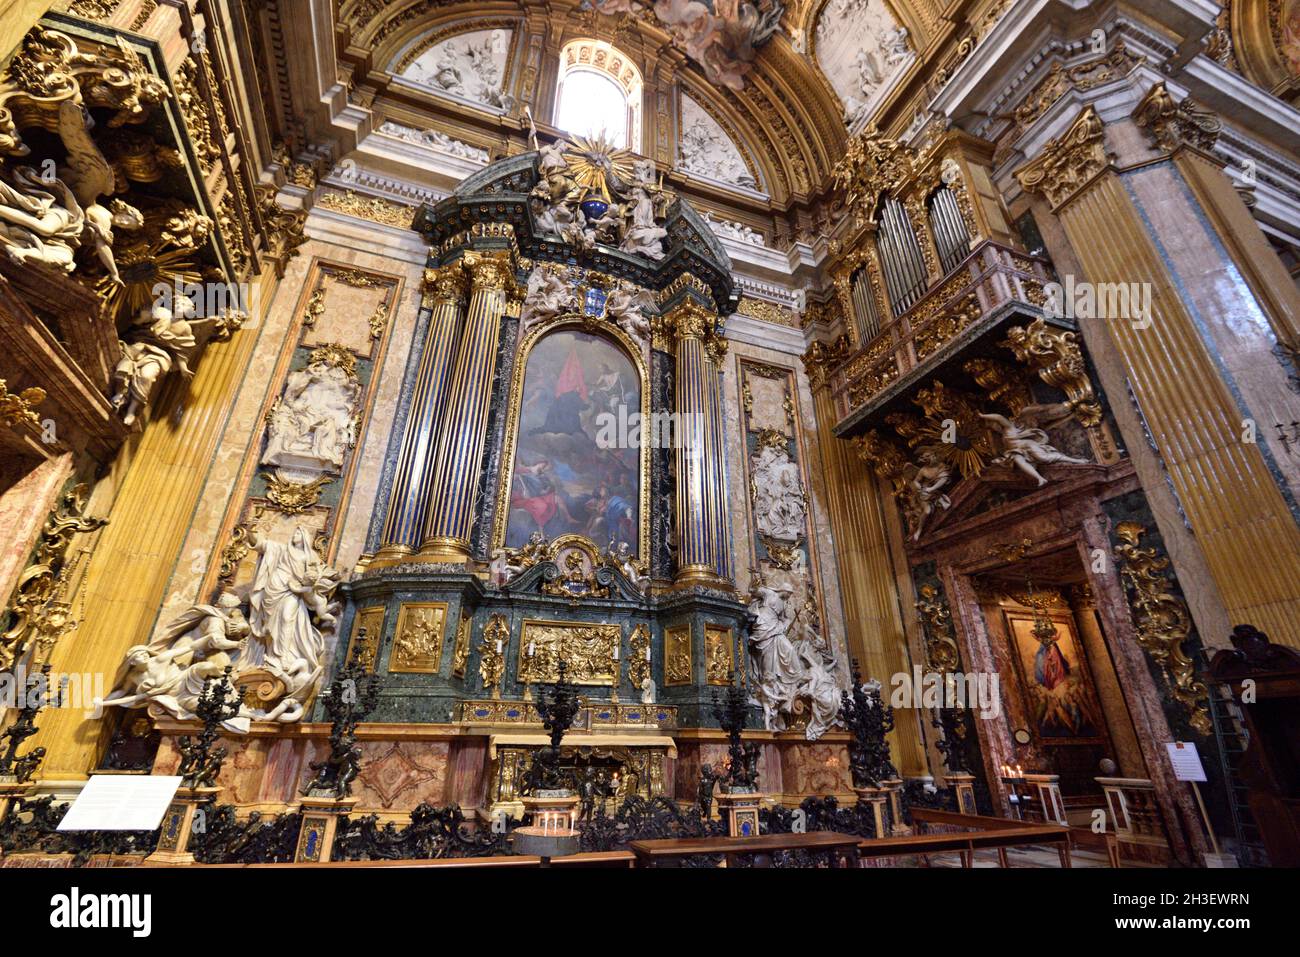 italien, rom, innenraum der chiesa del Gesù (Kirche Jesu), Altar des Heiligen ignatius und barocke Maschine Stockfoto